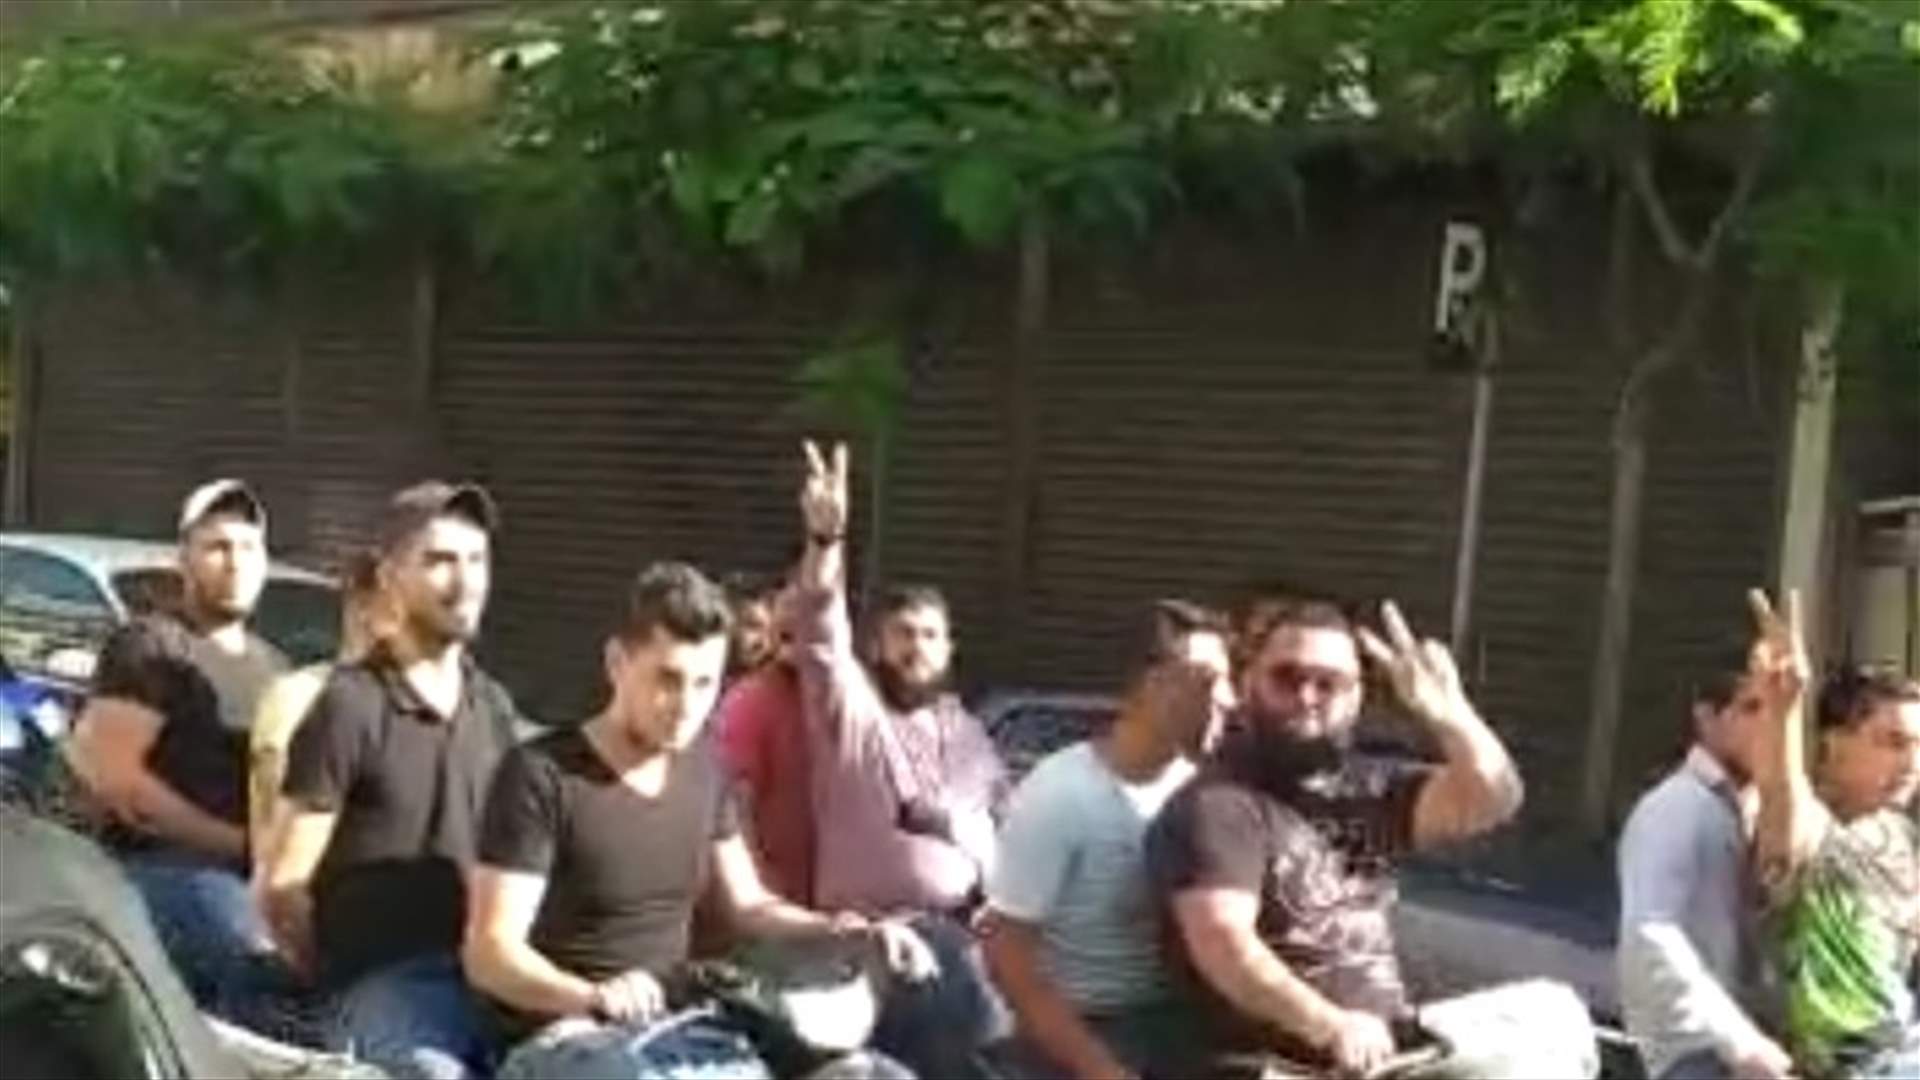 مسيرة دراجات وسيارات في شوارع طرابلس إحتجاجا على تردي الأوضاع الإقتصادية